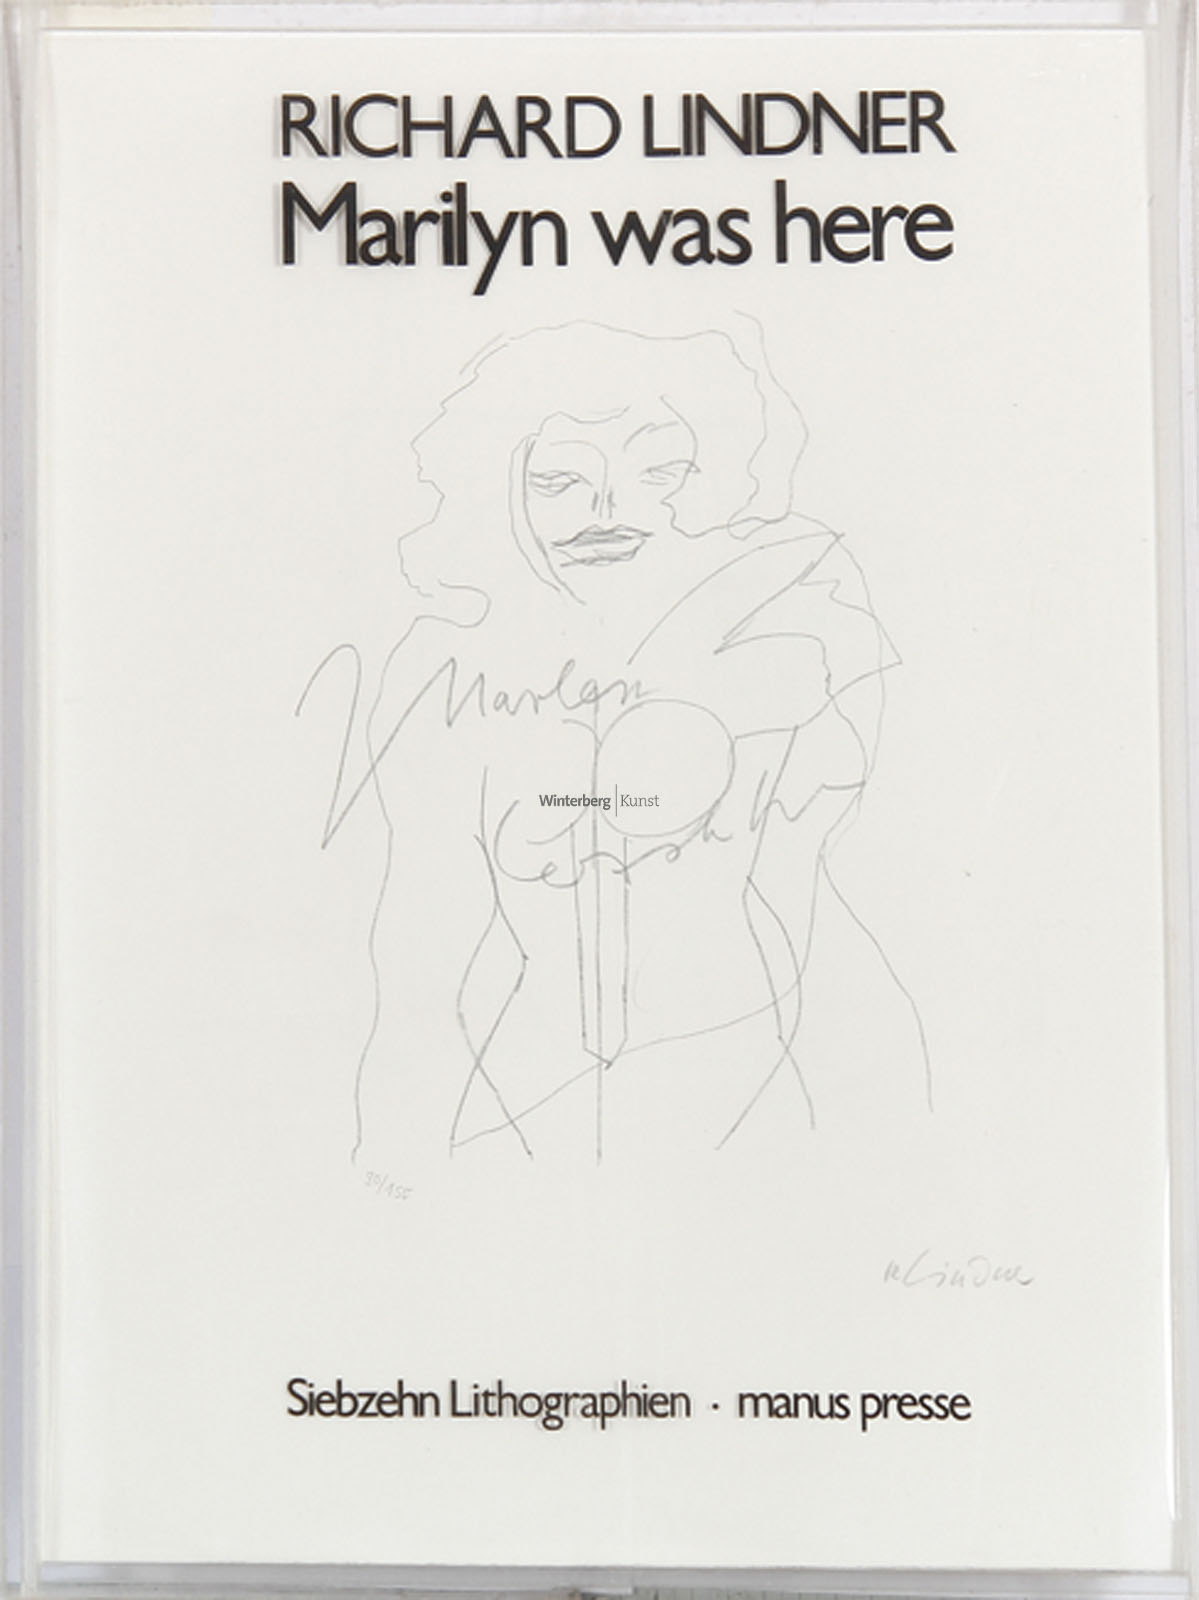 RICHARD LINDNER: Marilyn was here.